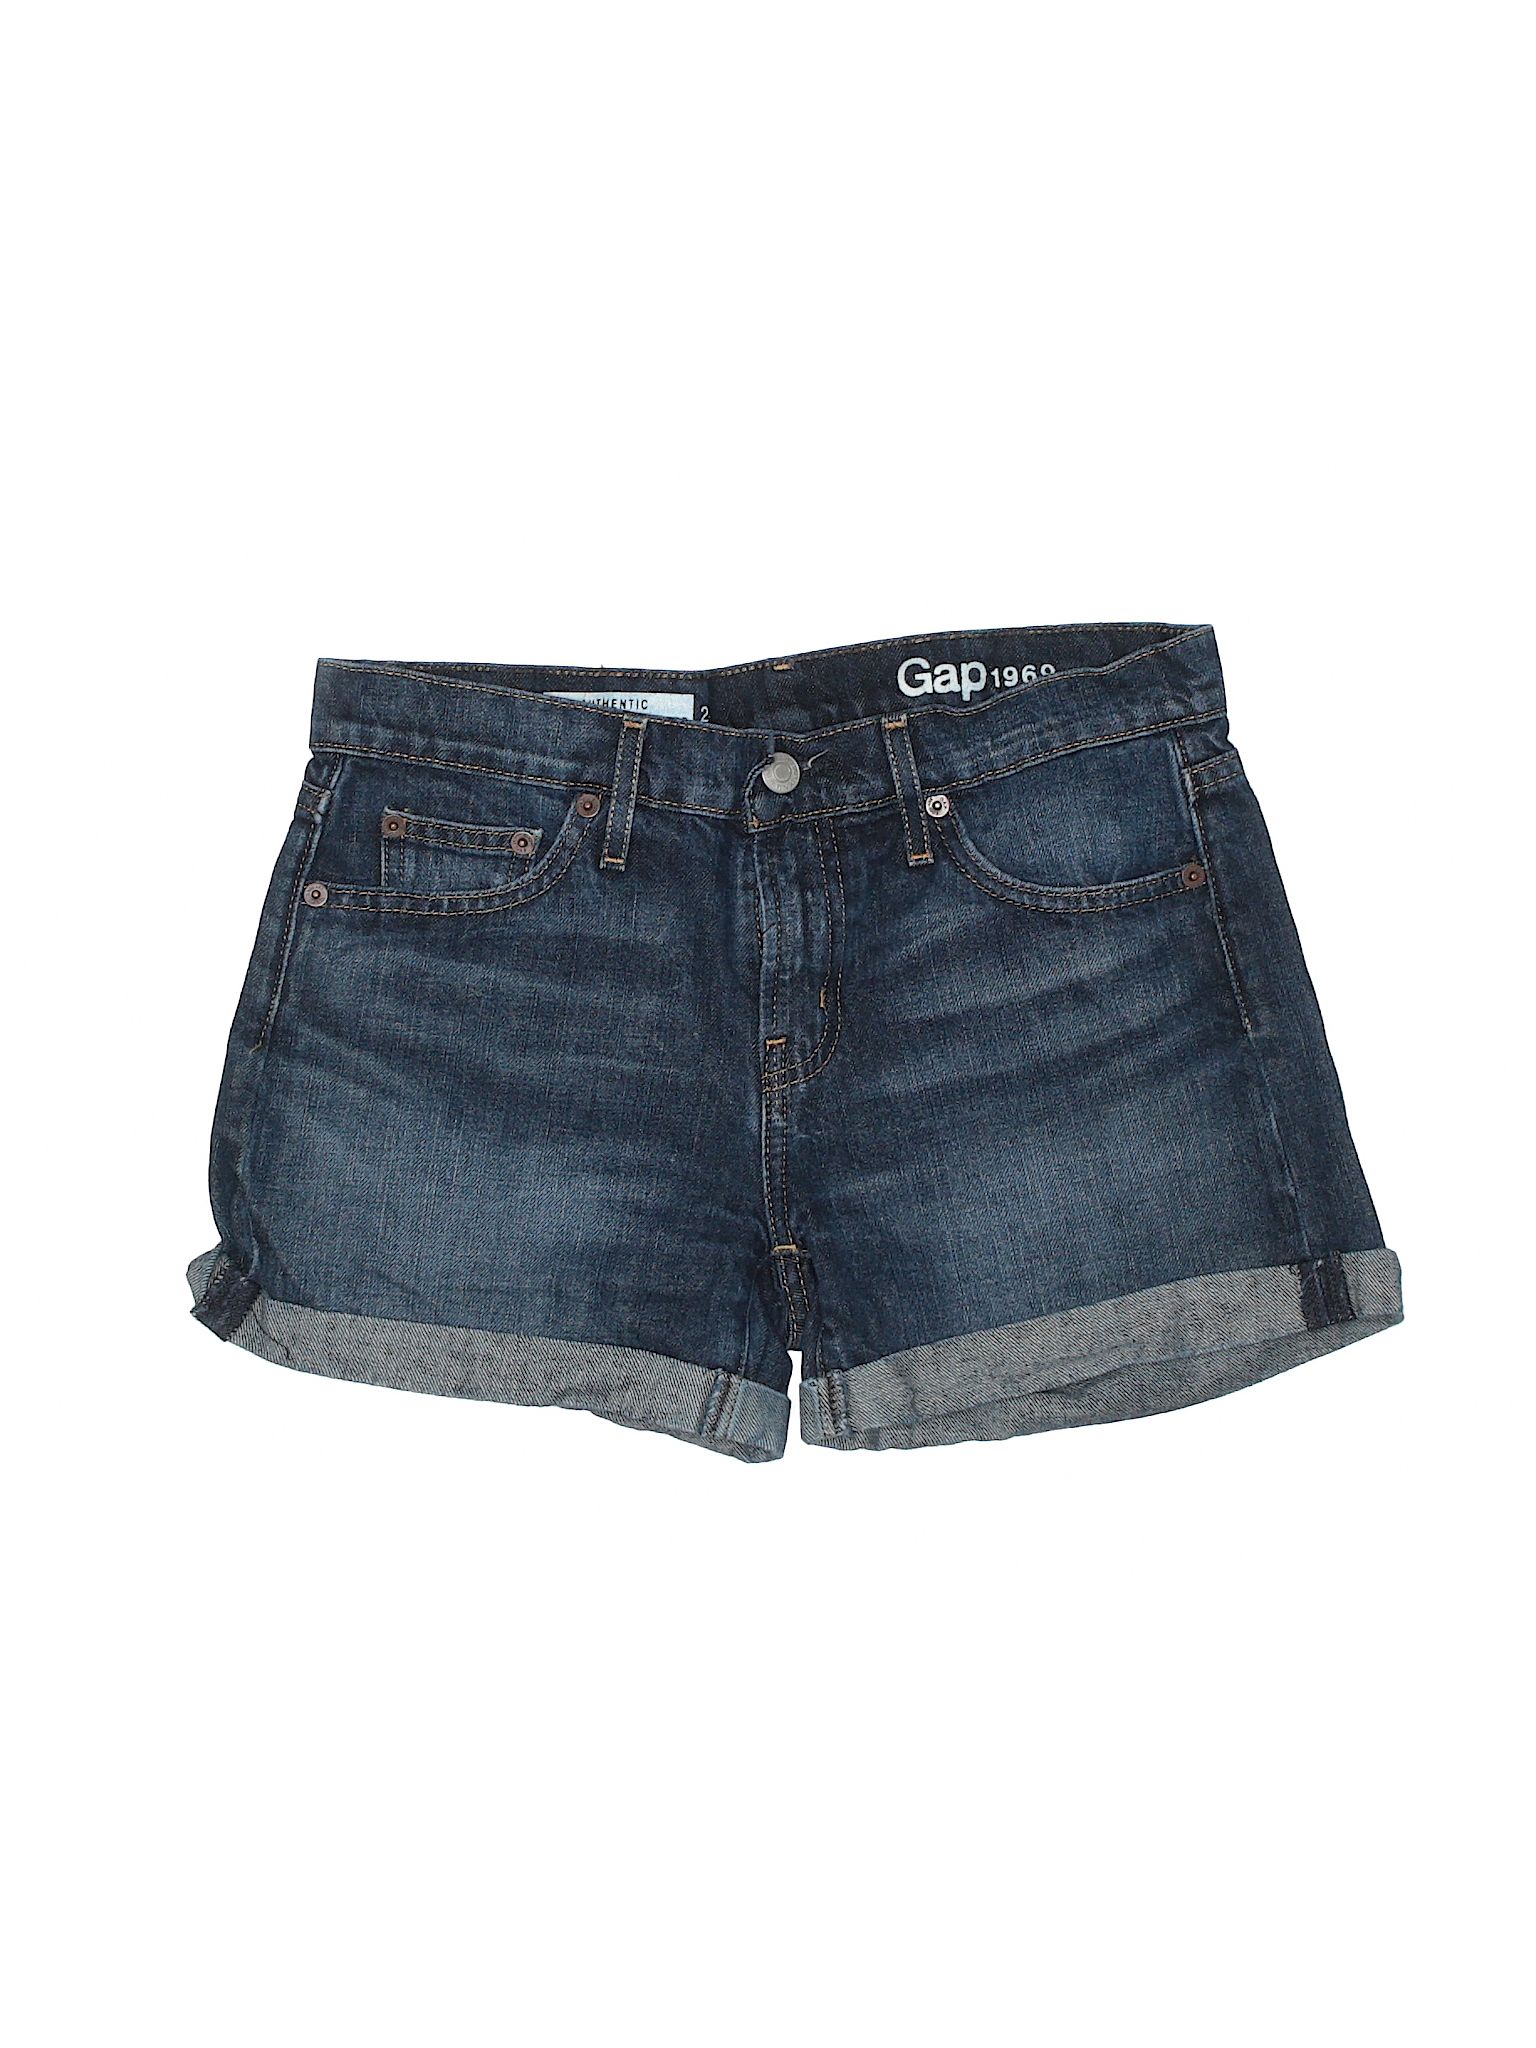 Gap Denim Shorts Size 0: Dark Blue Women's Bottoms - 28476708 | thredUP